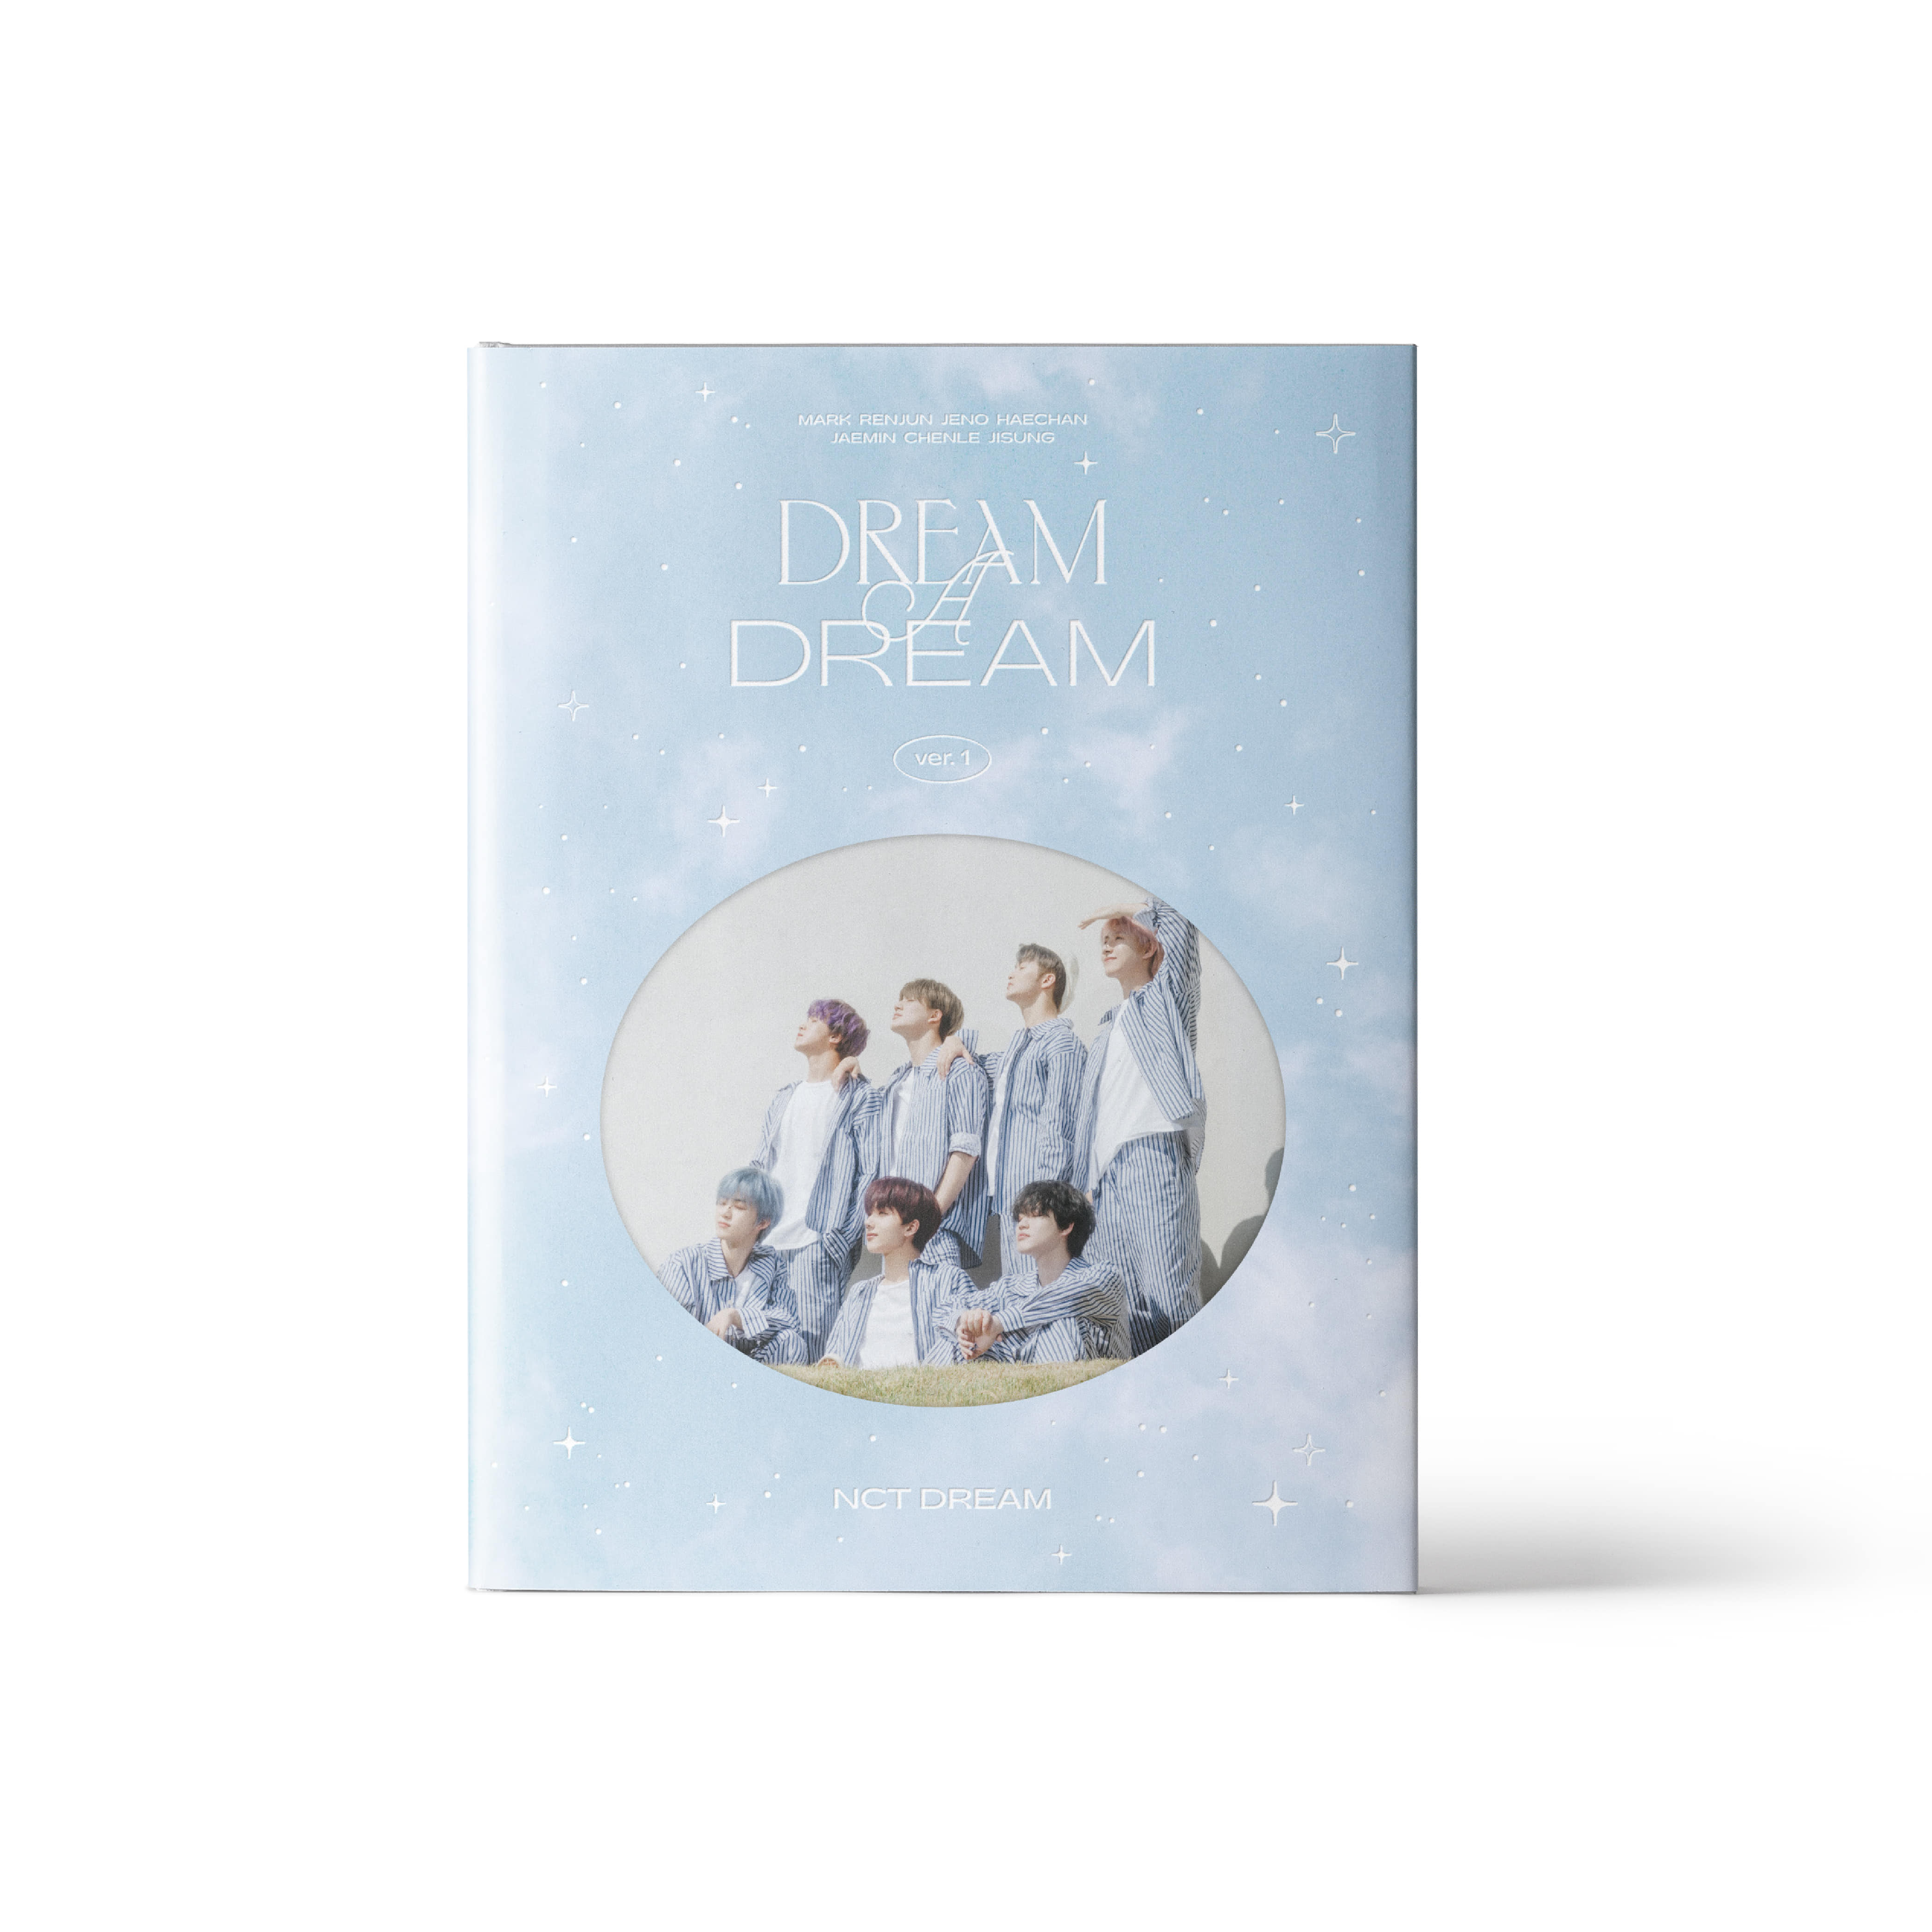 [예약 판매] NCT DREAM - NCT DREAM 화보집 [DREAM A DREAM]케이팝스토어(kpop store)